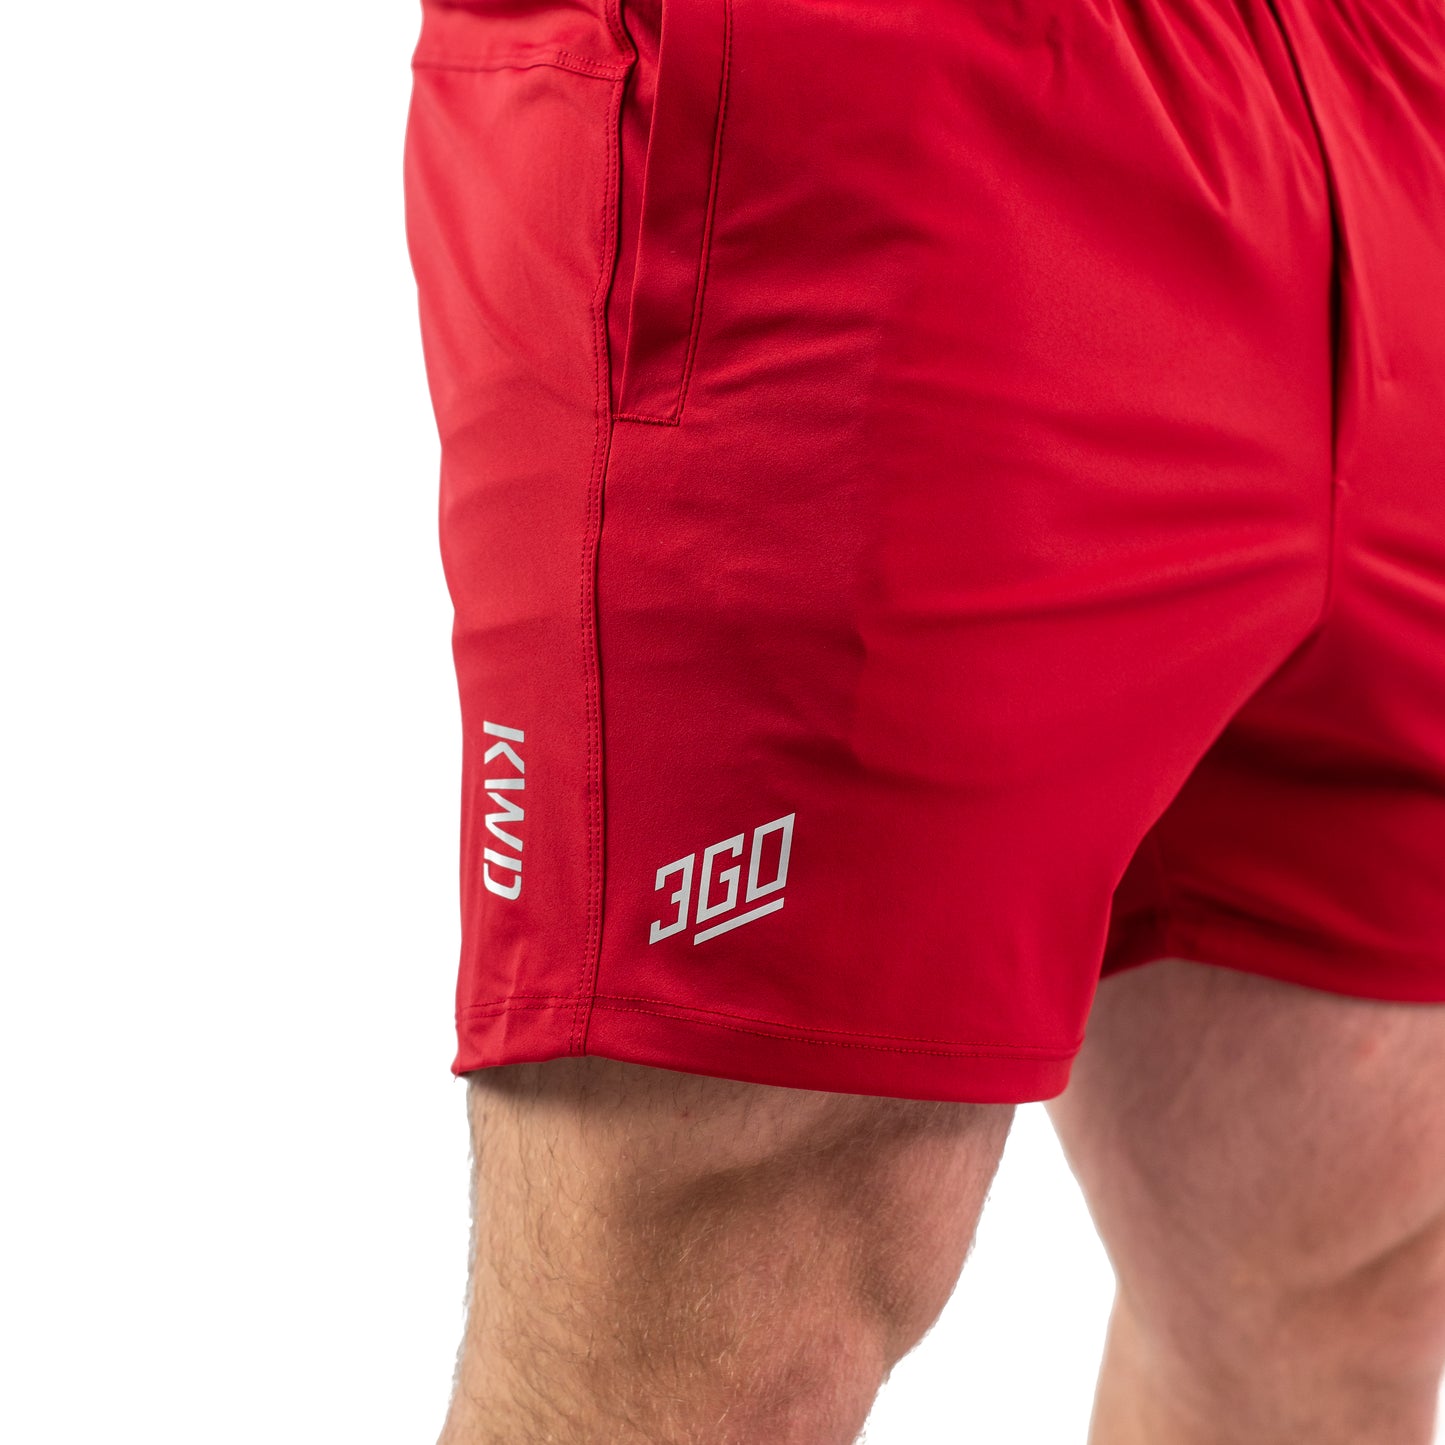 
                  
                    360Go KWD Shorts - Courage
                  
                